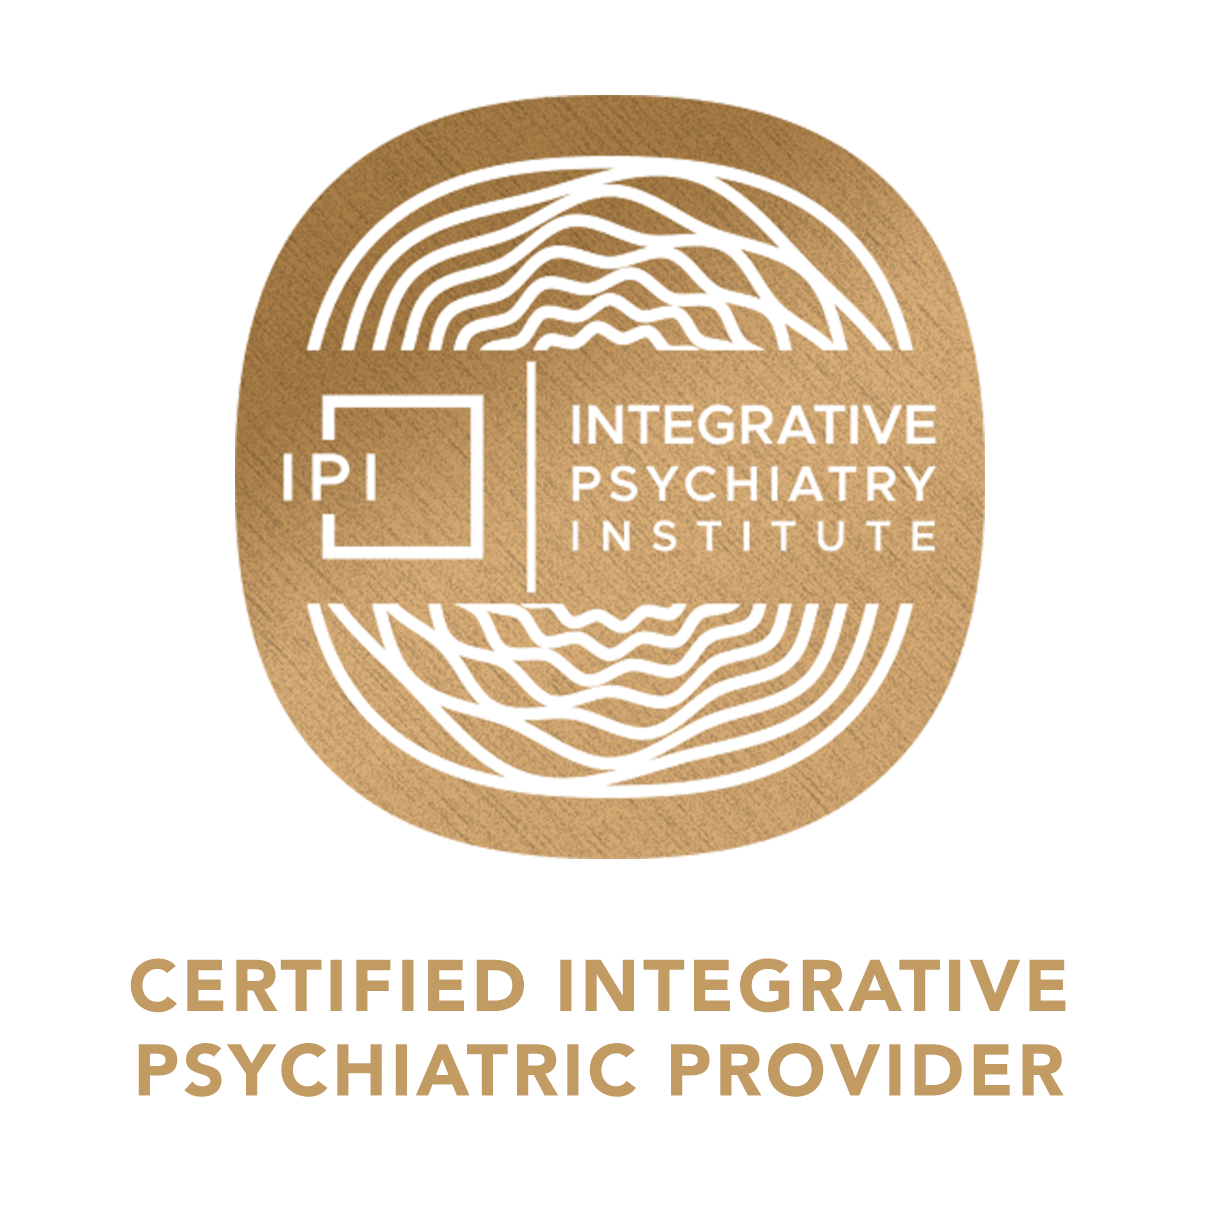 IPI Certified Integrative Psychiatric Provider SEAL